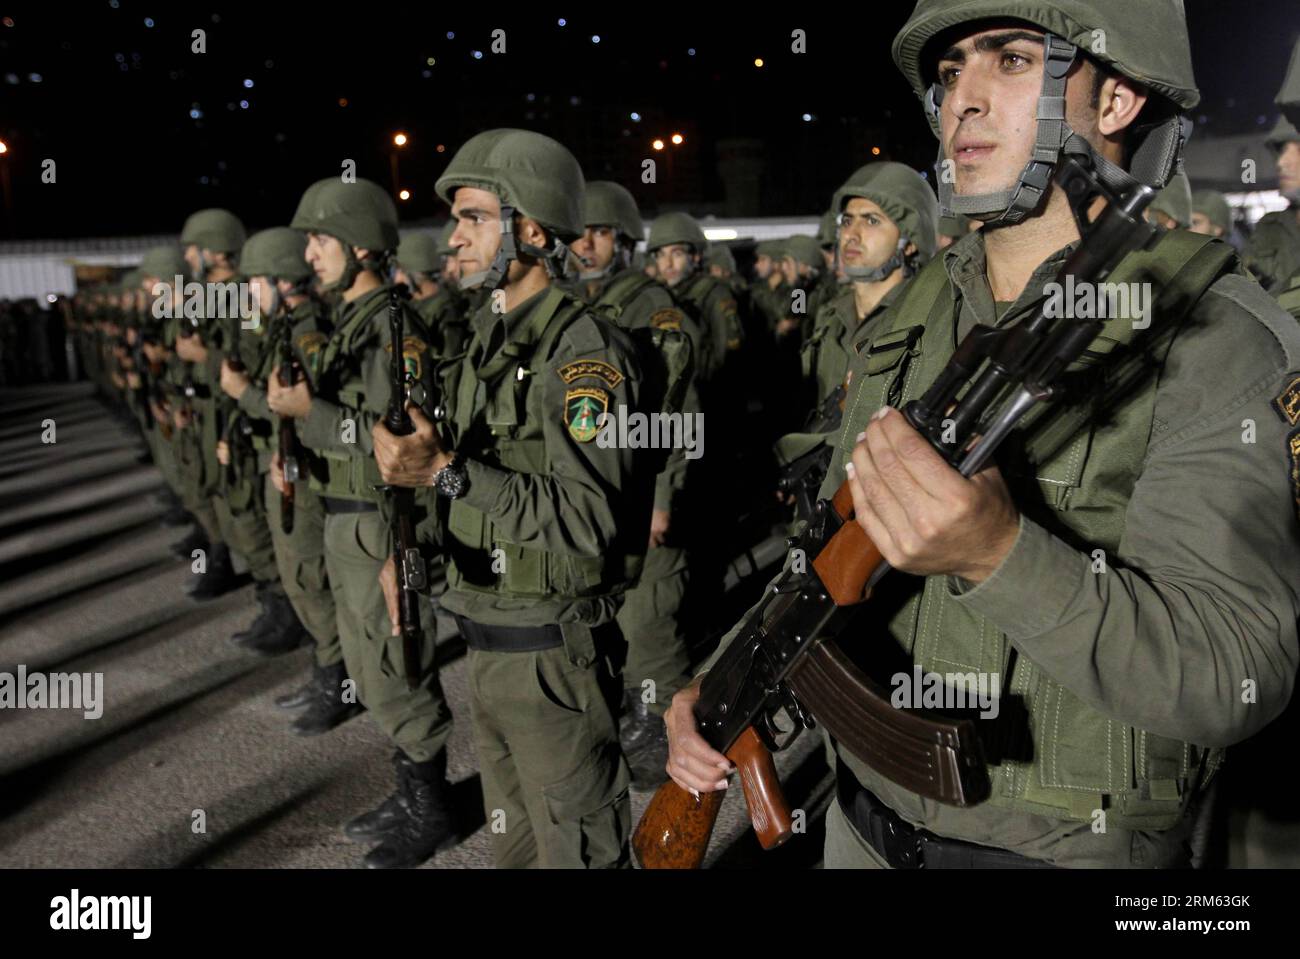 Número de archivo: 60786839 Fecha: 02.12.2013 Derechos de autor: Imago/Xinhua NABLUS, 2 de diciembre de 2013 - Miembros de las fuerzas de seguridad palestinas participan en un mitin militar en la ciudad de Nablus, Cisjordania, el 2 de diciembre de 2013. Funcionarios dijeron que cientos de fuerzas palestinas se desplegaron en el distrito de Nablus, en el norte de Cisjordania, reforzando la presencia de seguridad y persiguiendo a hombres armados palestinos buscados. (Xinhua/Ayman Nobani) MIDEAST-NABLUS-MILITAR-RALLY PUBLICATIONxNOTxINxCHN Gesellschaft x0x sk 2013 quer Aufmacher premiumd Foto de stock